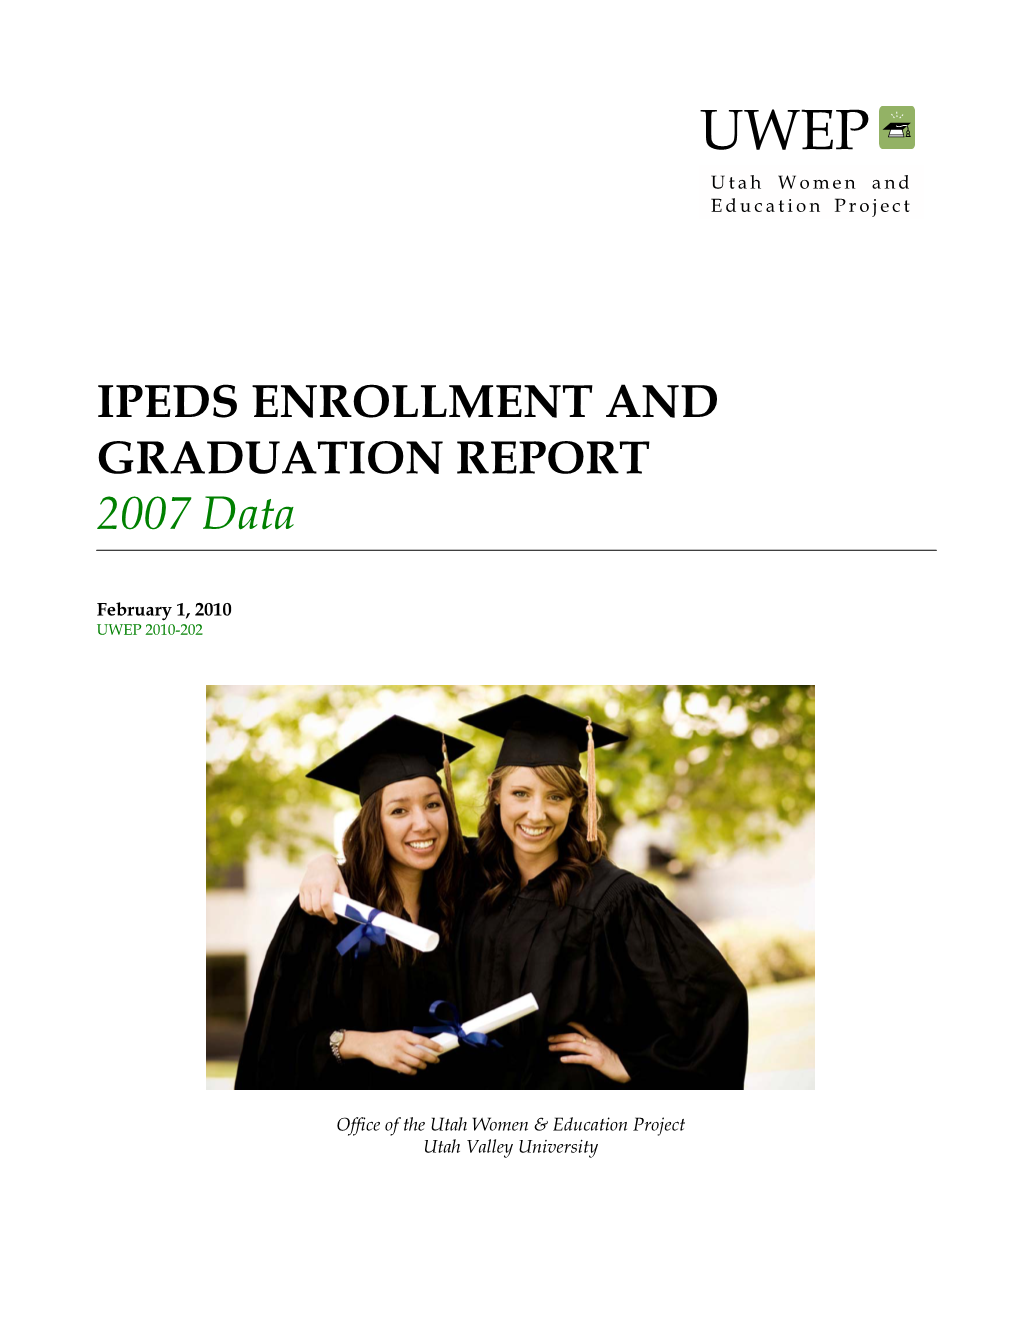 IPEDS Enrollment and Graduation, 2007 Data